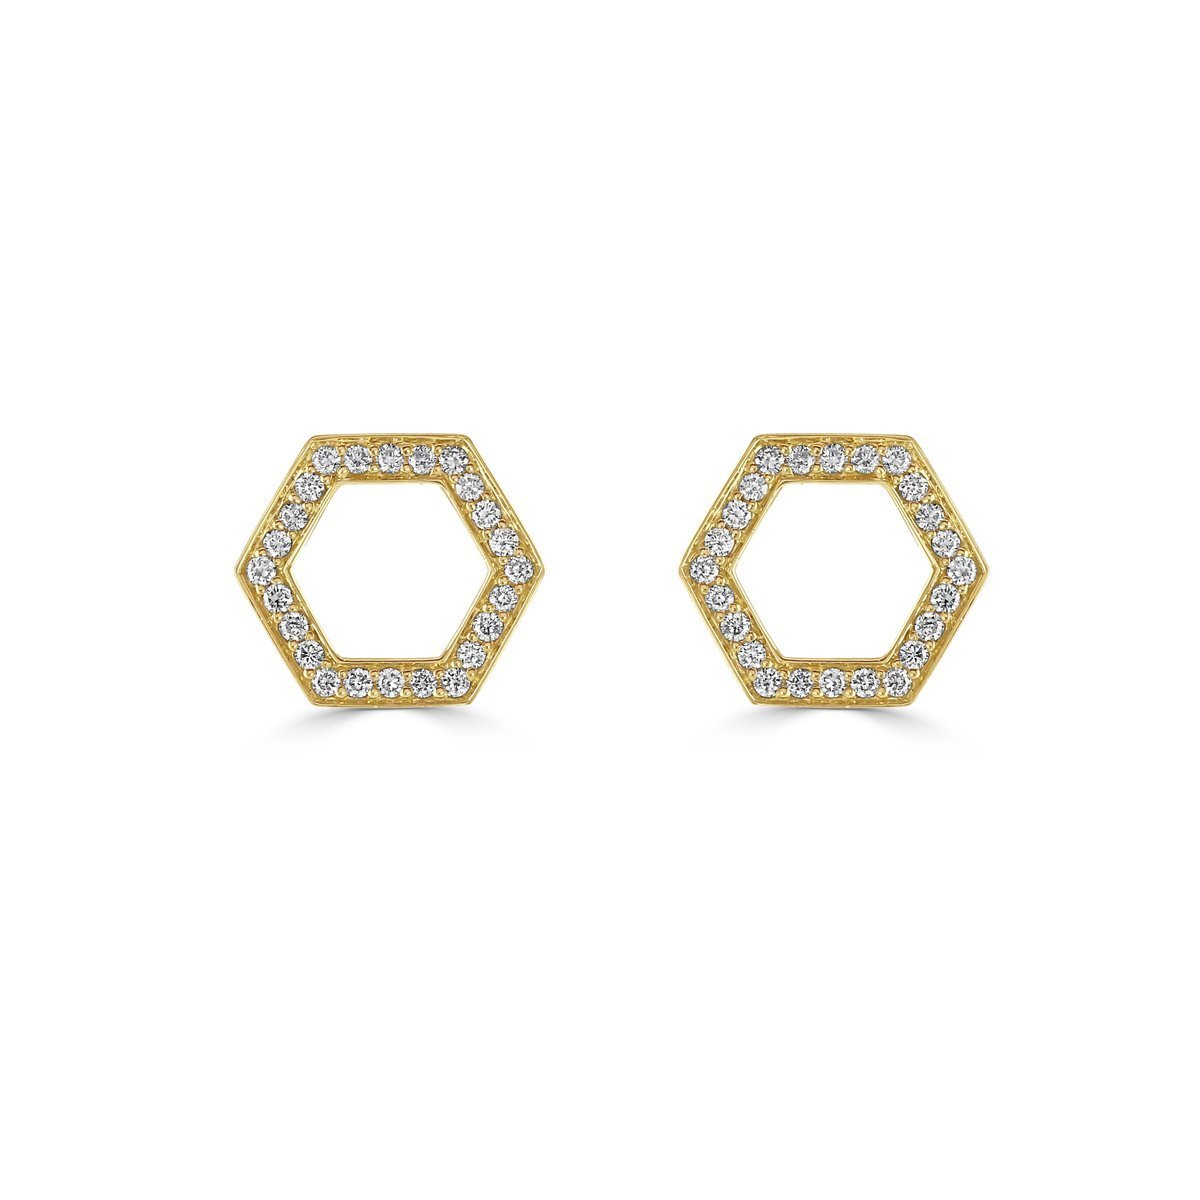 Honeycomb Yellow Gold Diamond Stud Earrings